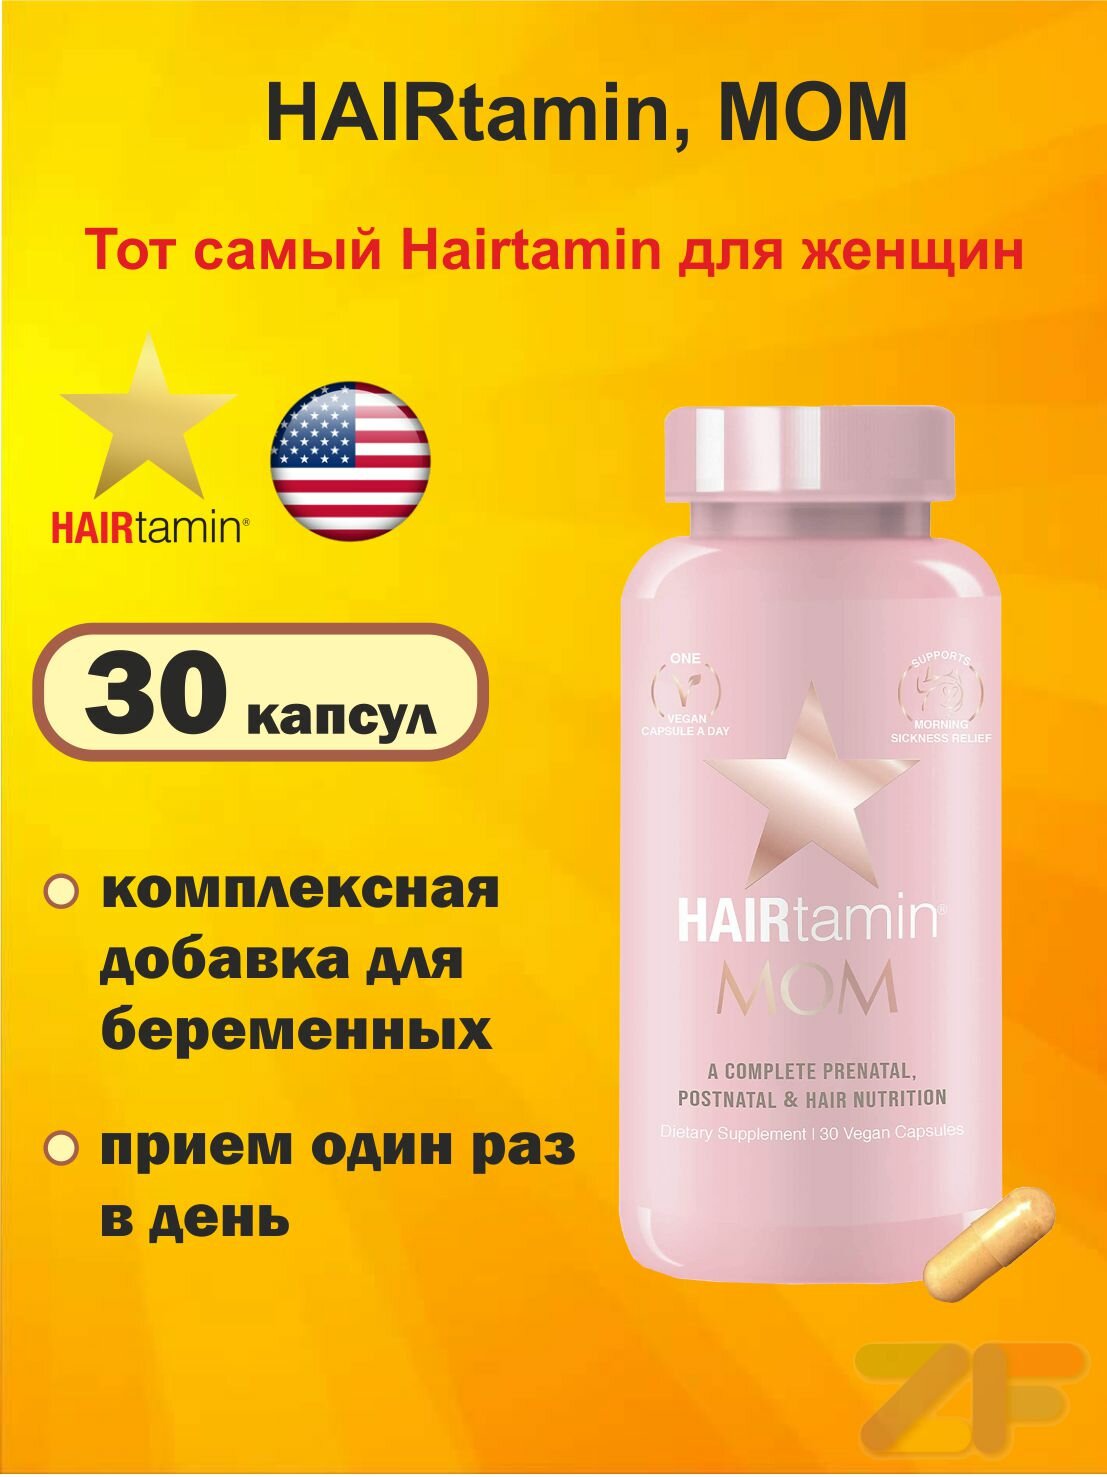 HAIRtamin, MOM , 30 vegan capsules